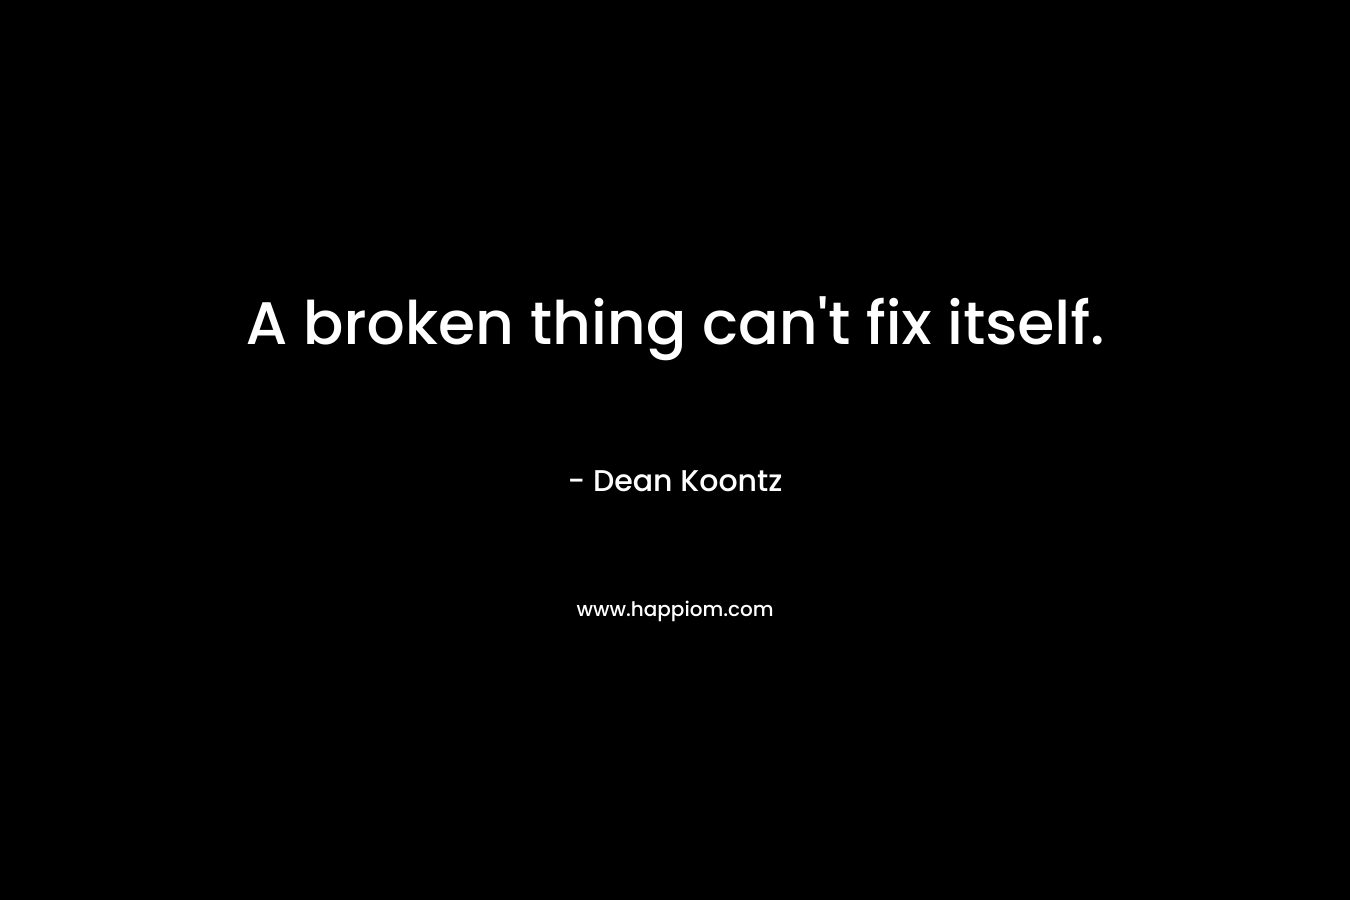 A broken thing can't fix itself.